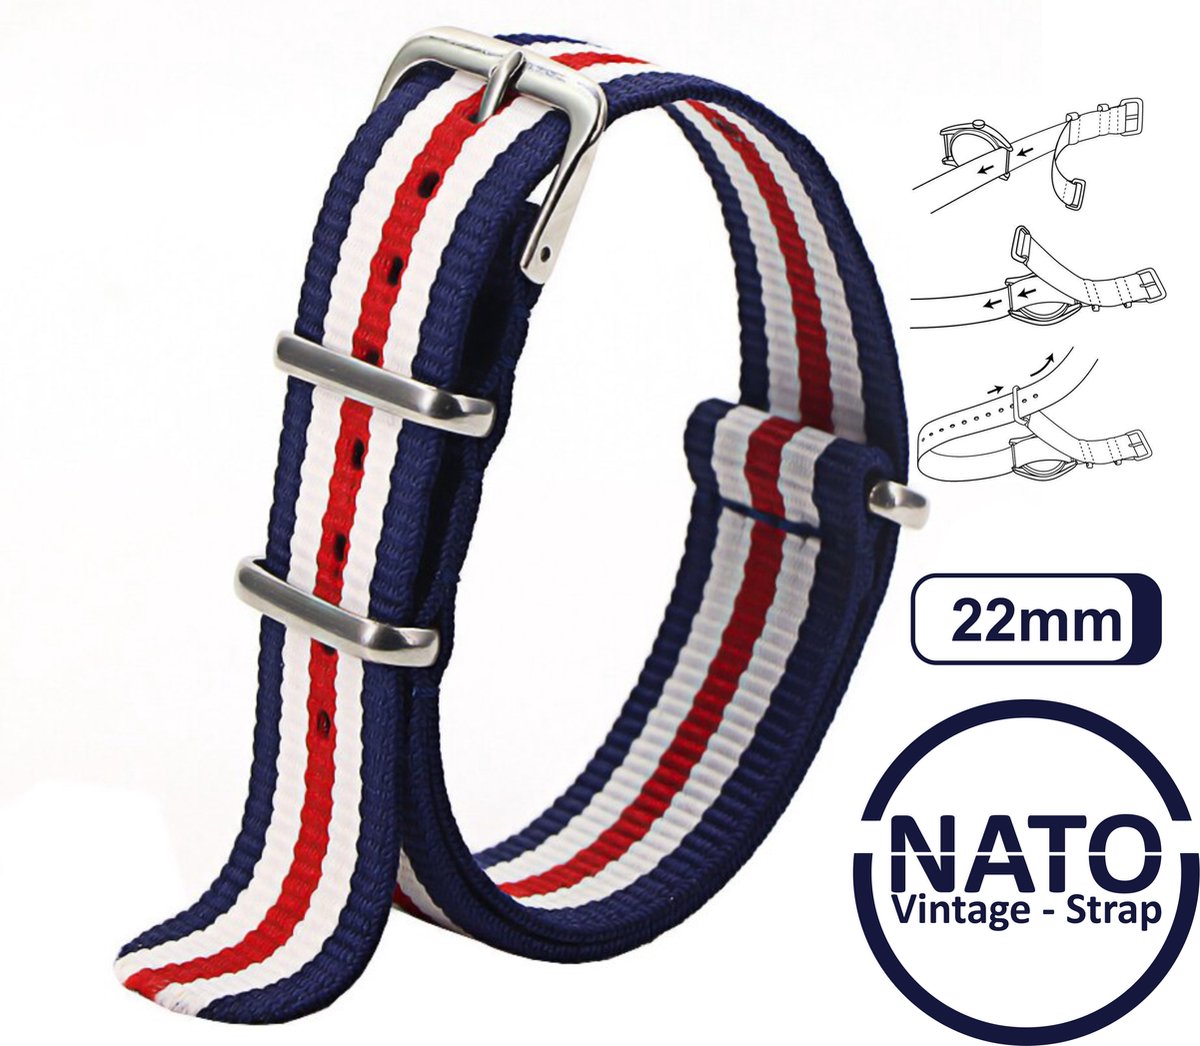 22mm Nato Strap Rood Wit Blauw streep - Vintage James Bond - Nato Strap collectie - Mannen - Horlogebanden - 22 mm bandbreedte voor oa. Seiko Rolex Omega Casio en Citizen